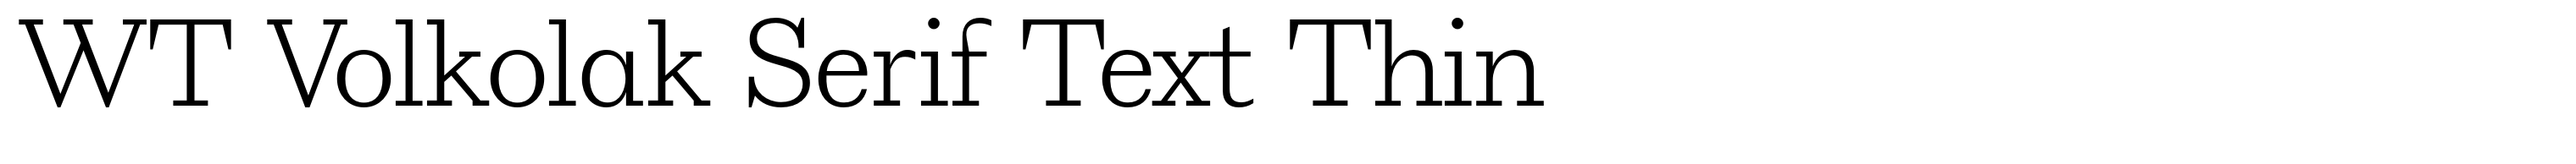 WT Volkolak Serif Text Thin